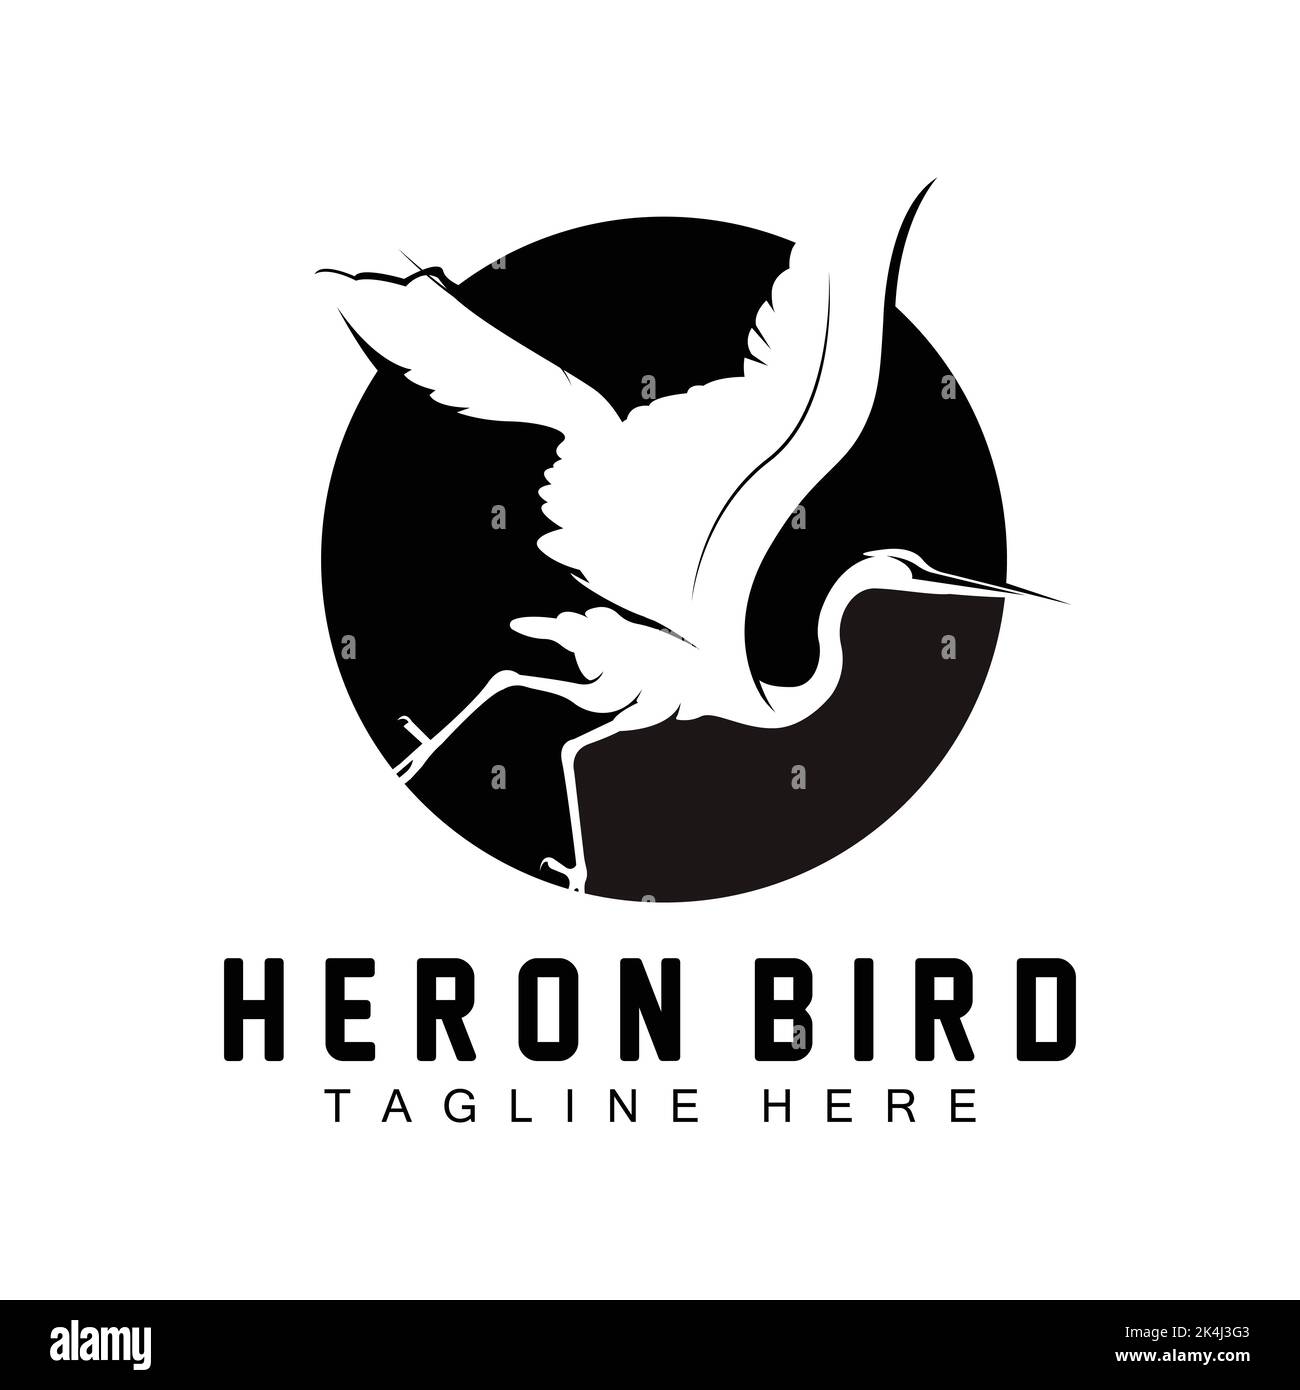 Motif oiseau Heron Stork logo, oiseaux Heron Flying on the River Vector, illustration de la marque du produit Illustration de Vecteur